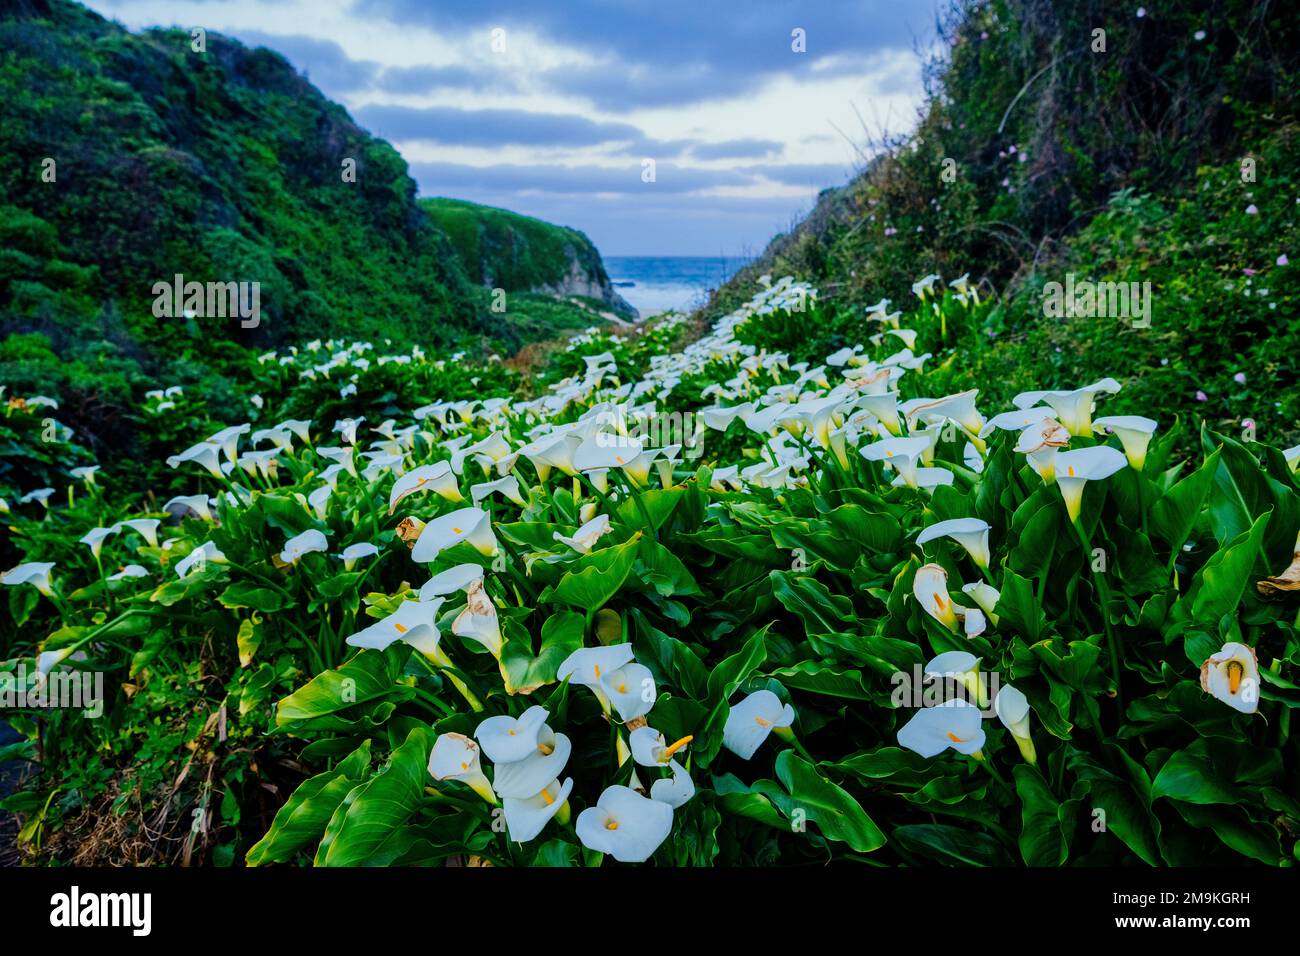 Field of calla lilies (Zantedeschia) on coast Stock Photo